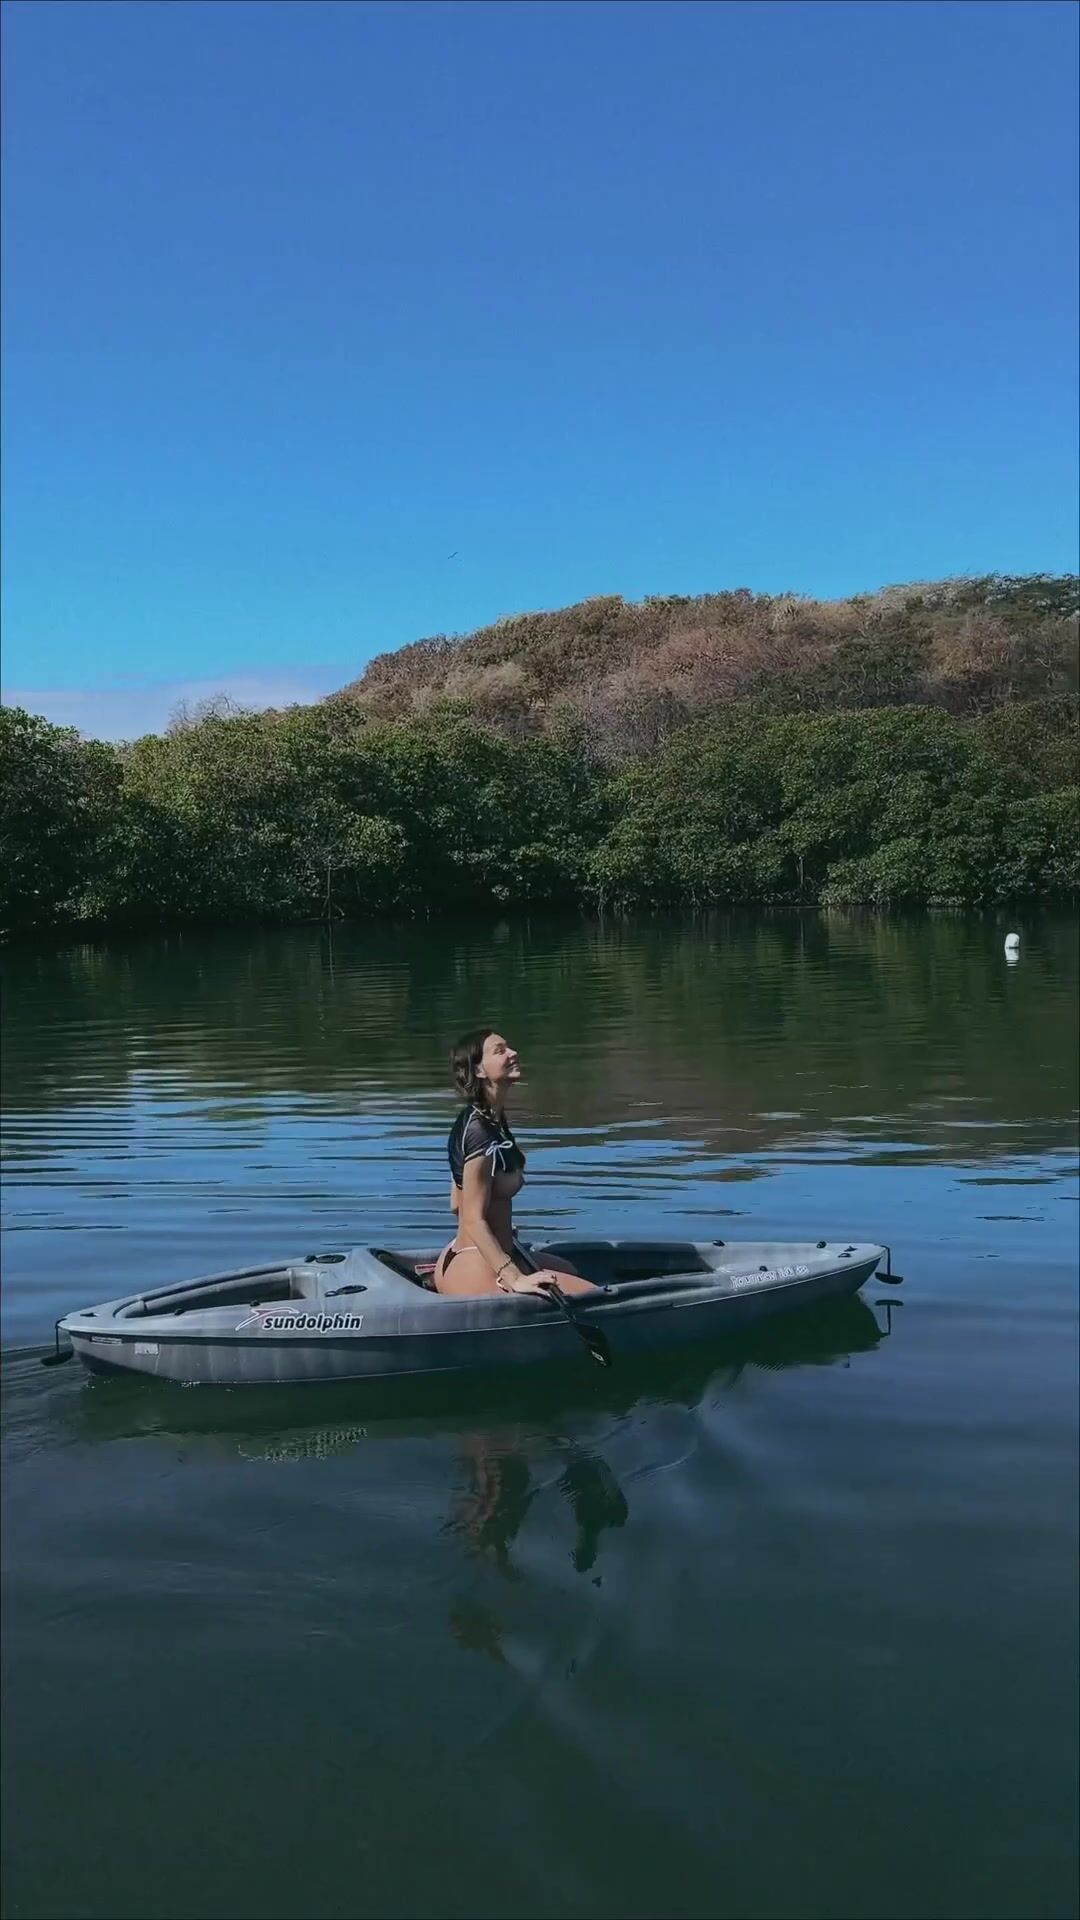 Rachel Cook topless canoeing